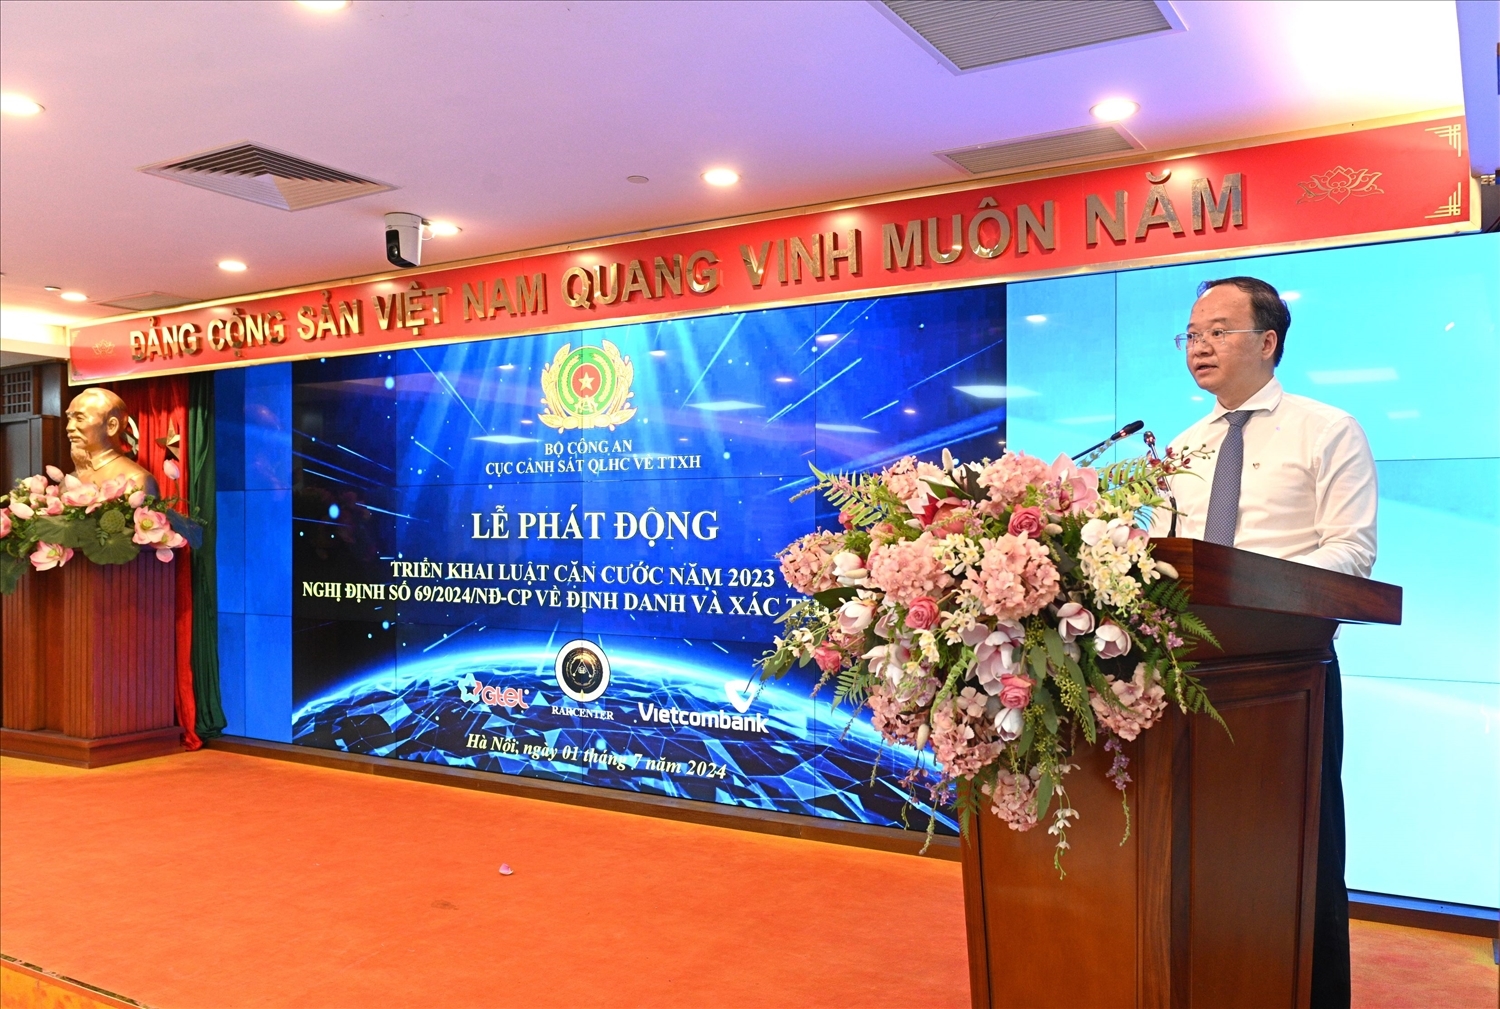 Ông Lê Quang Vinh - Phó Tổng Giám đốc Vietcombank phát biểu tại buổi lễ